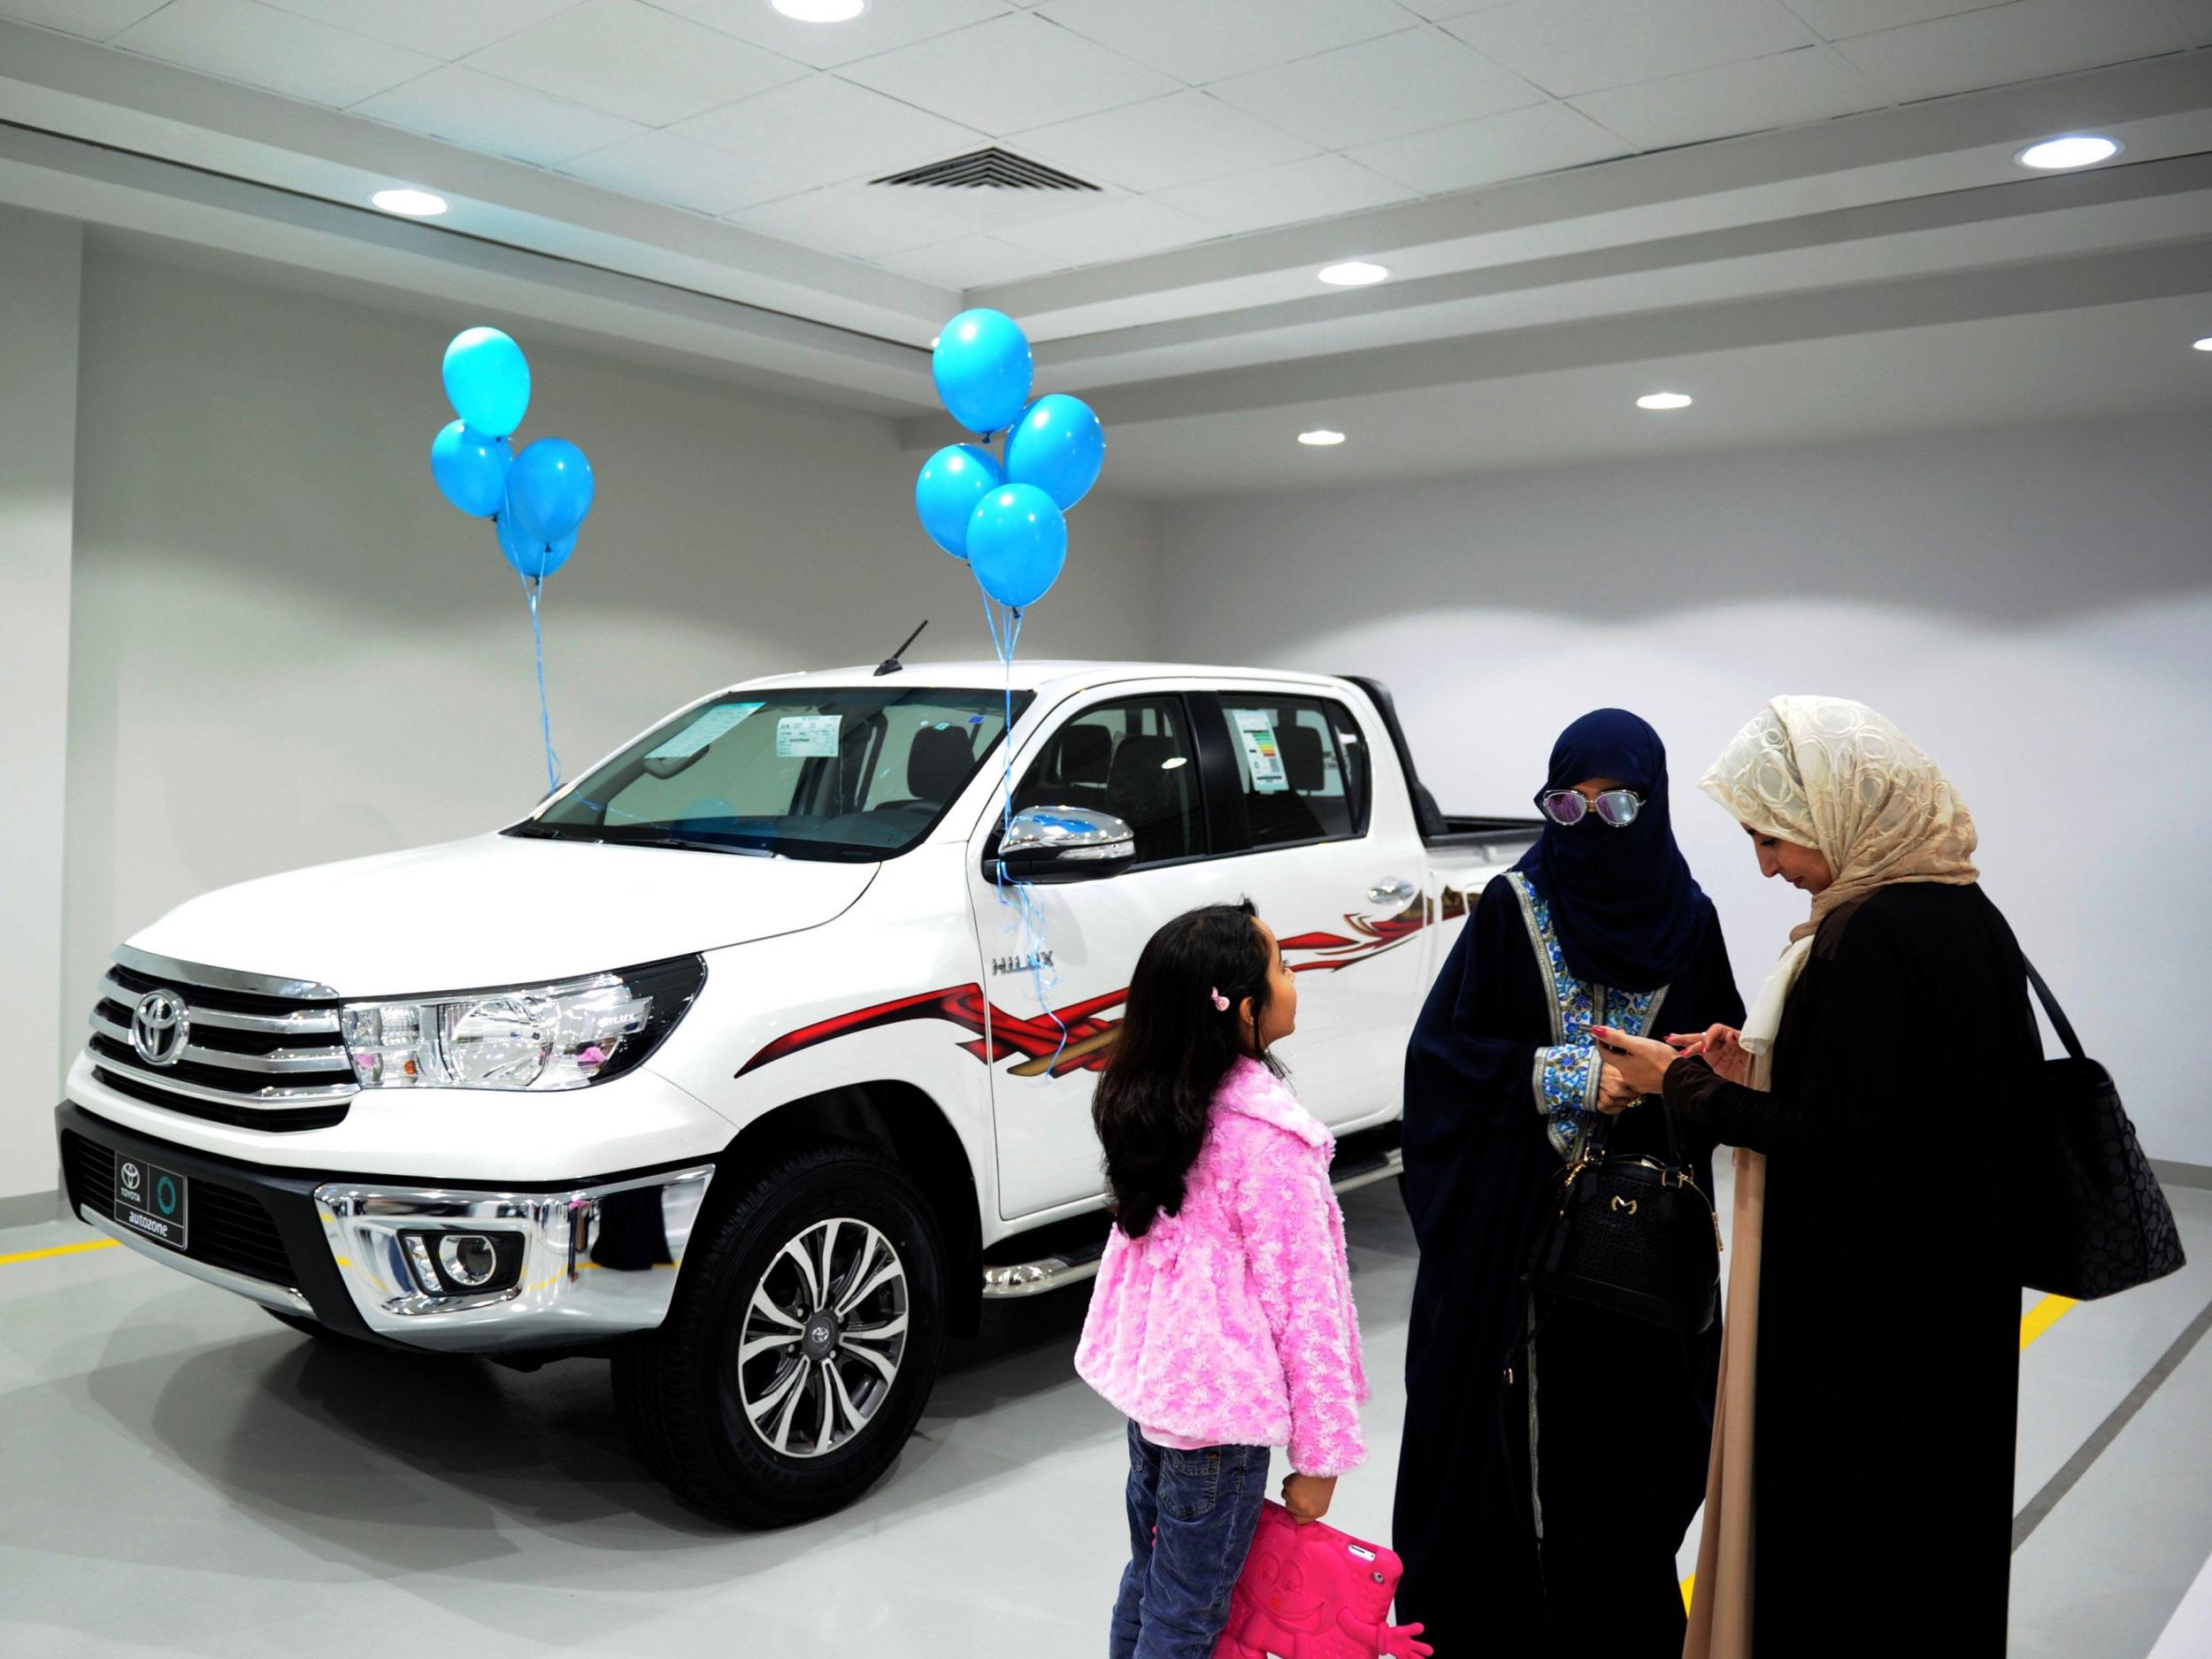 Saudi women tour the showroom